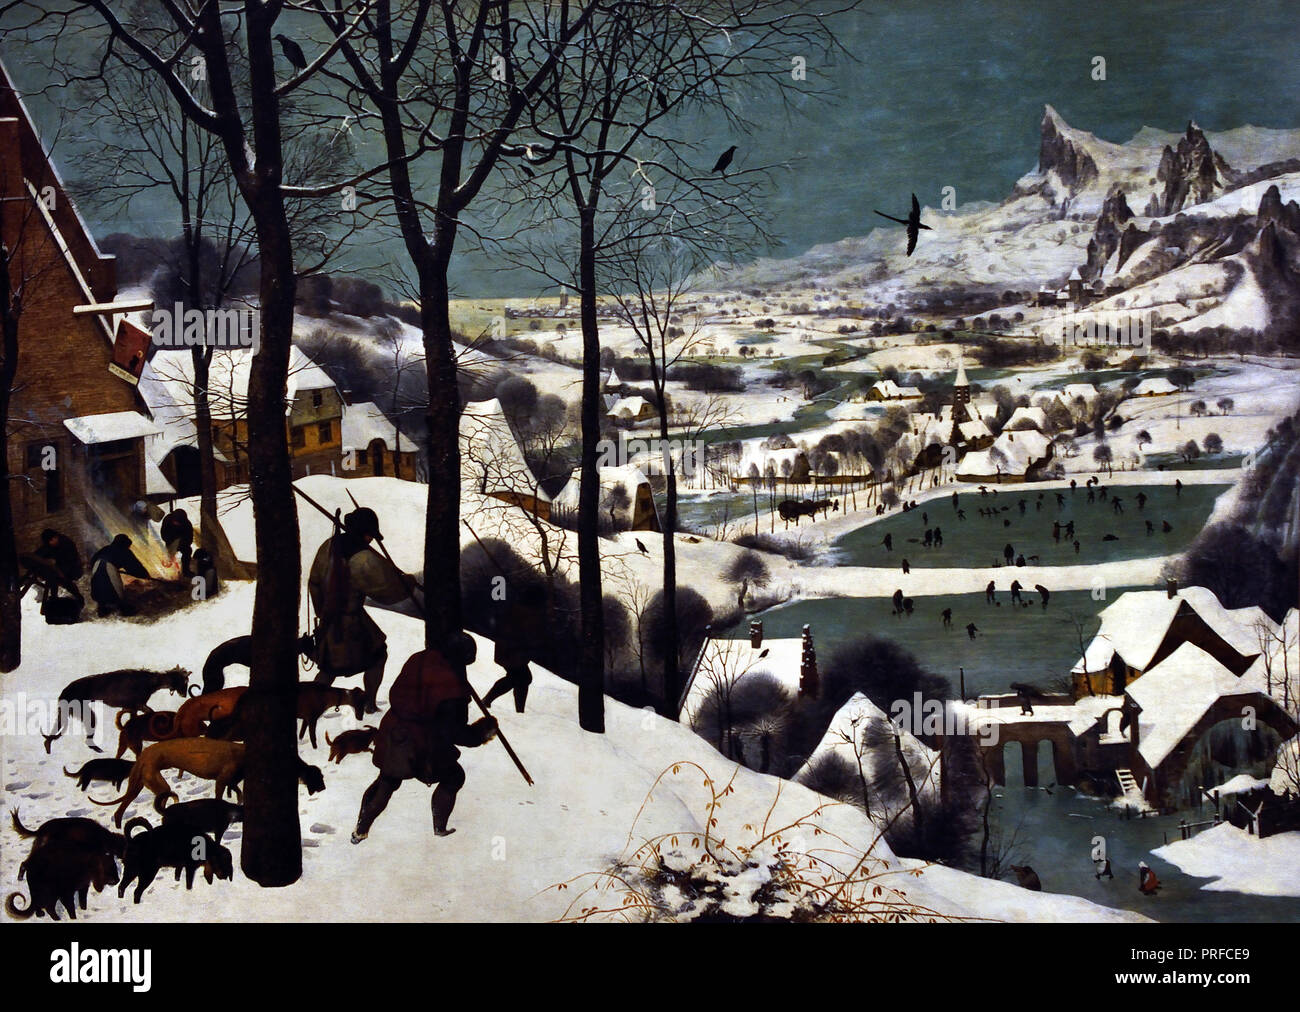 Jäger im Schnee (Winter) 1565 von Pieter Bruegel (auch Brueghel der Ältere (1525-1530) - 1569) war der bedeutendste Künstler der Niederländischen und Flämischen Renaissance Maler, Belgien, belgische, niederländische, der in den Niederlanden. Stockfoto